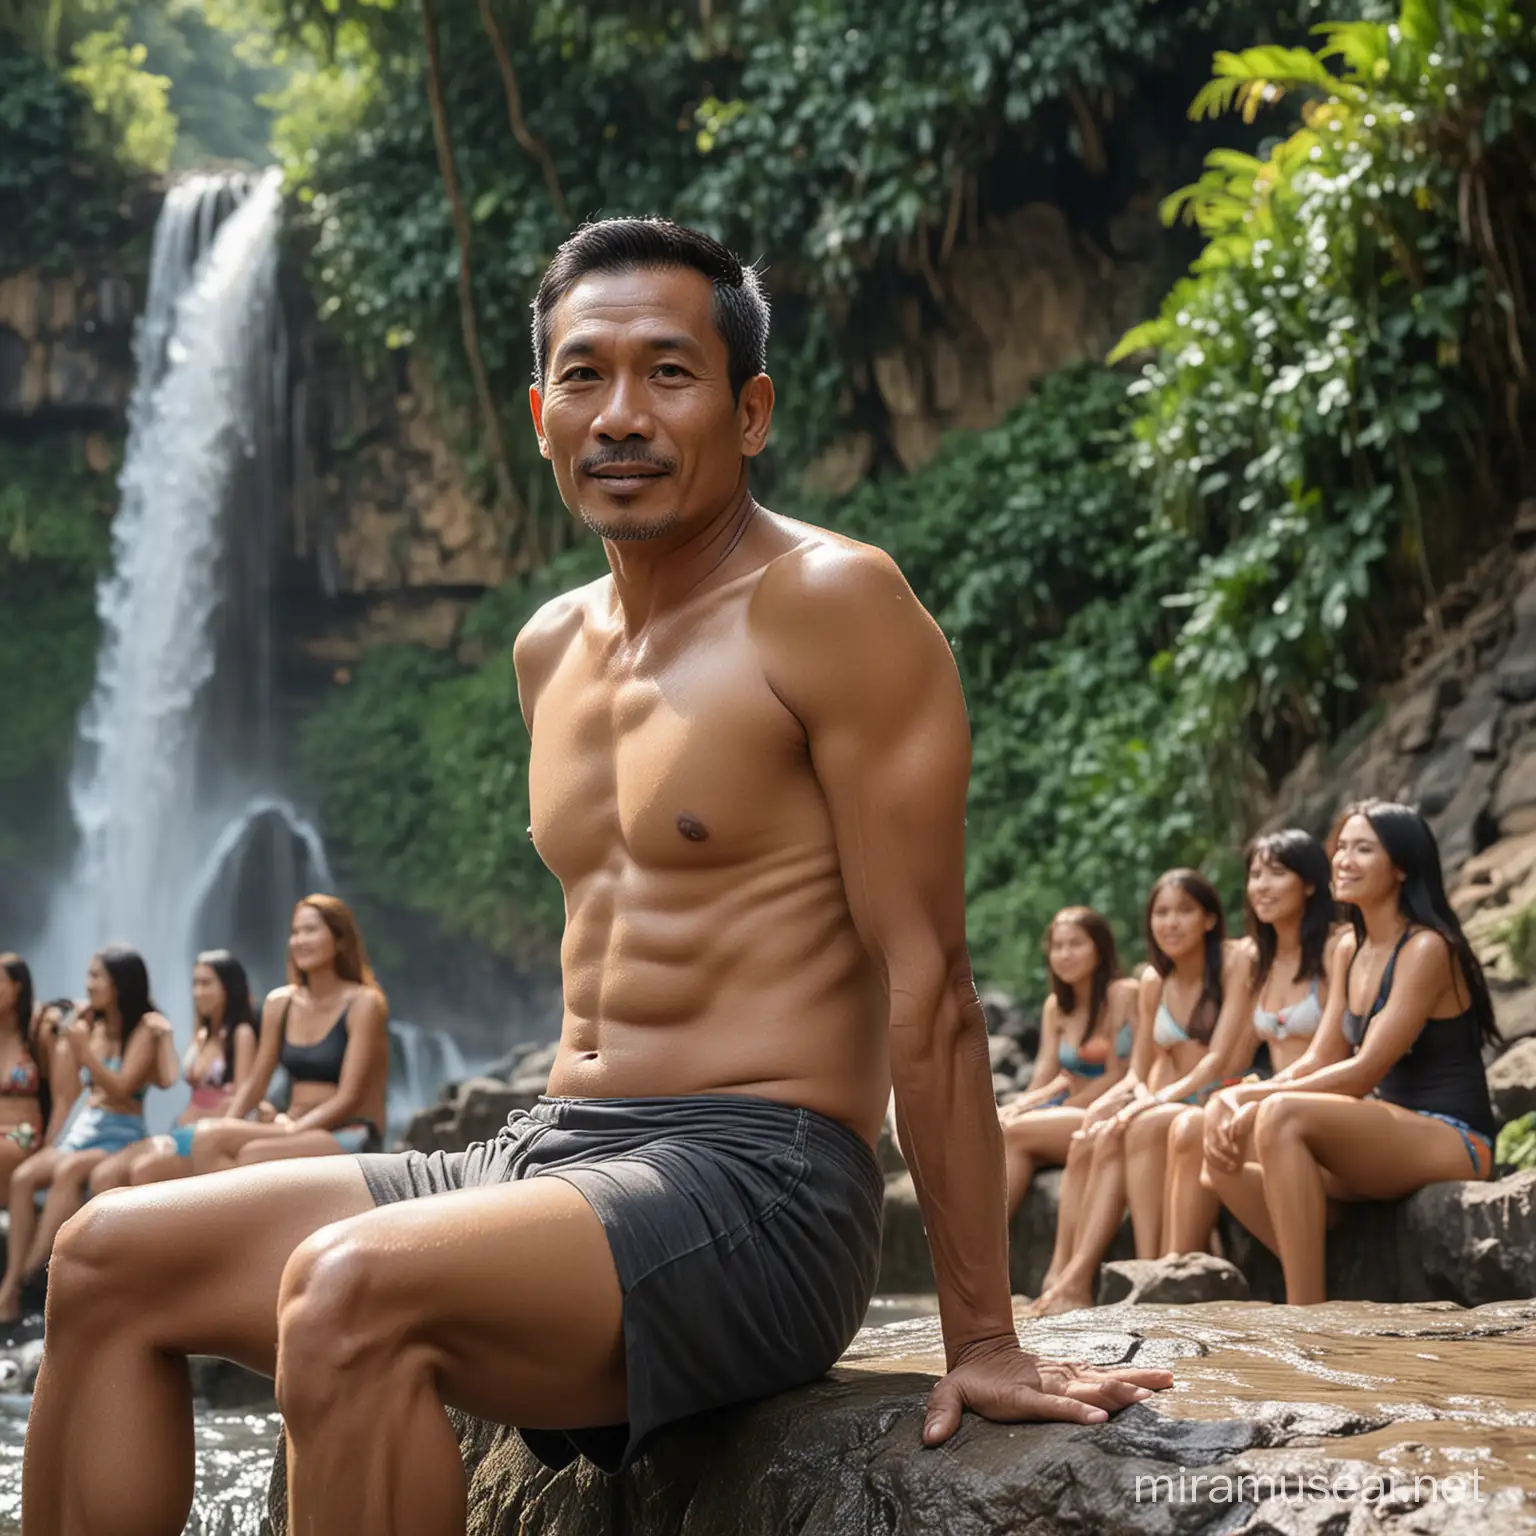 Gambar seorang pria tampan Indonesia berusia 50 tahun mengenakan kaos super tipis  sedang duduk di tepi sungai air terjun pada siang hari.  Di latar belakangnya terdapat beberapa gadis gadis cantik memakai bikini yang indah.  Gambarnya asli dan dalam ultra HD.